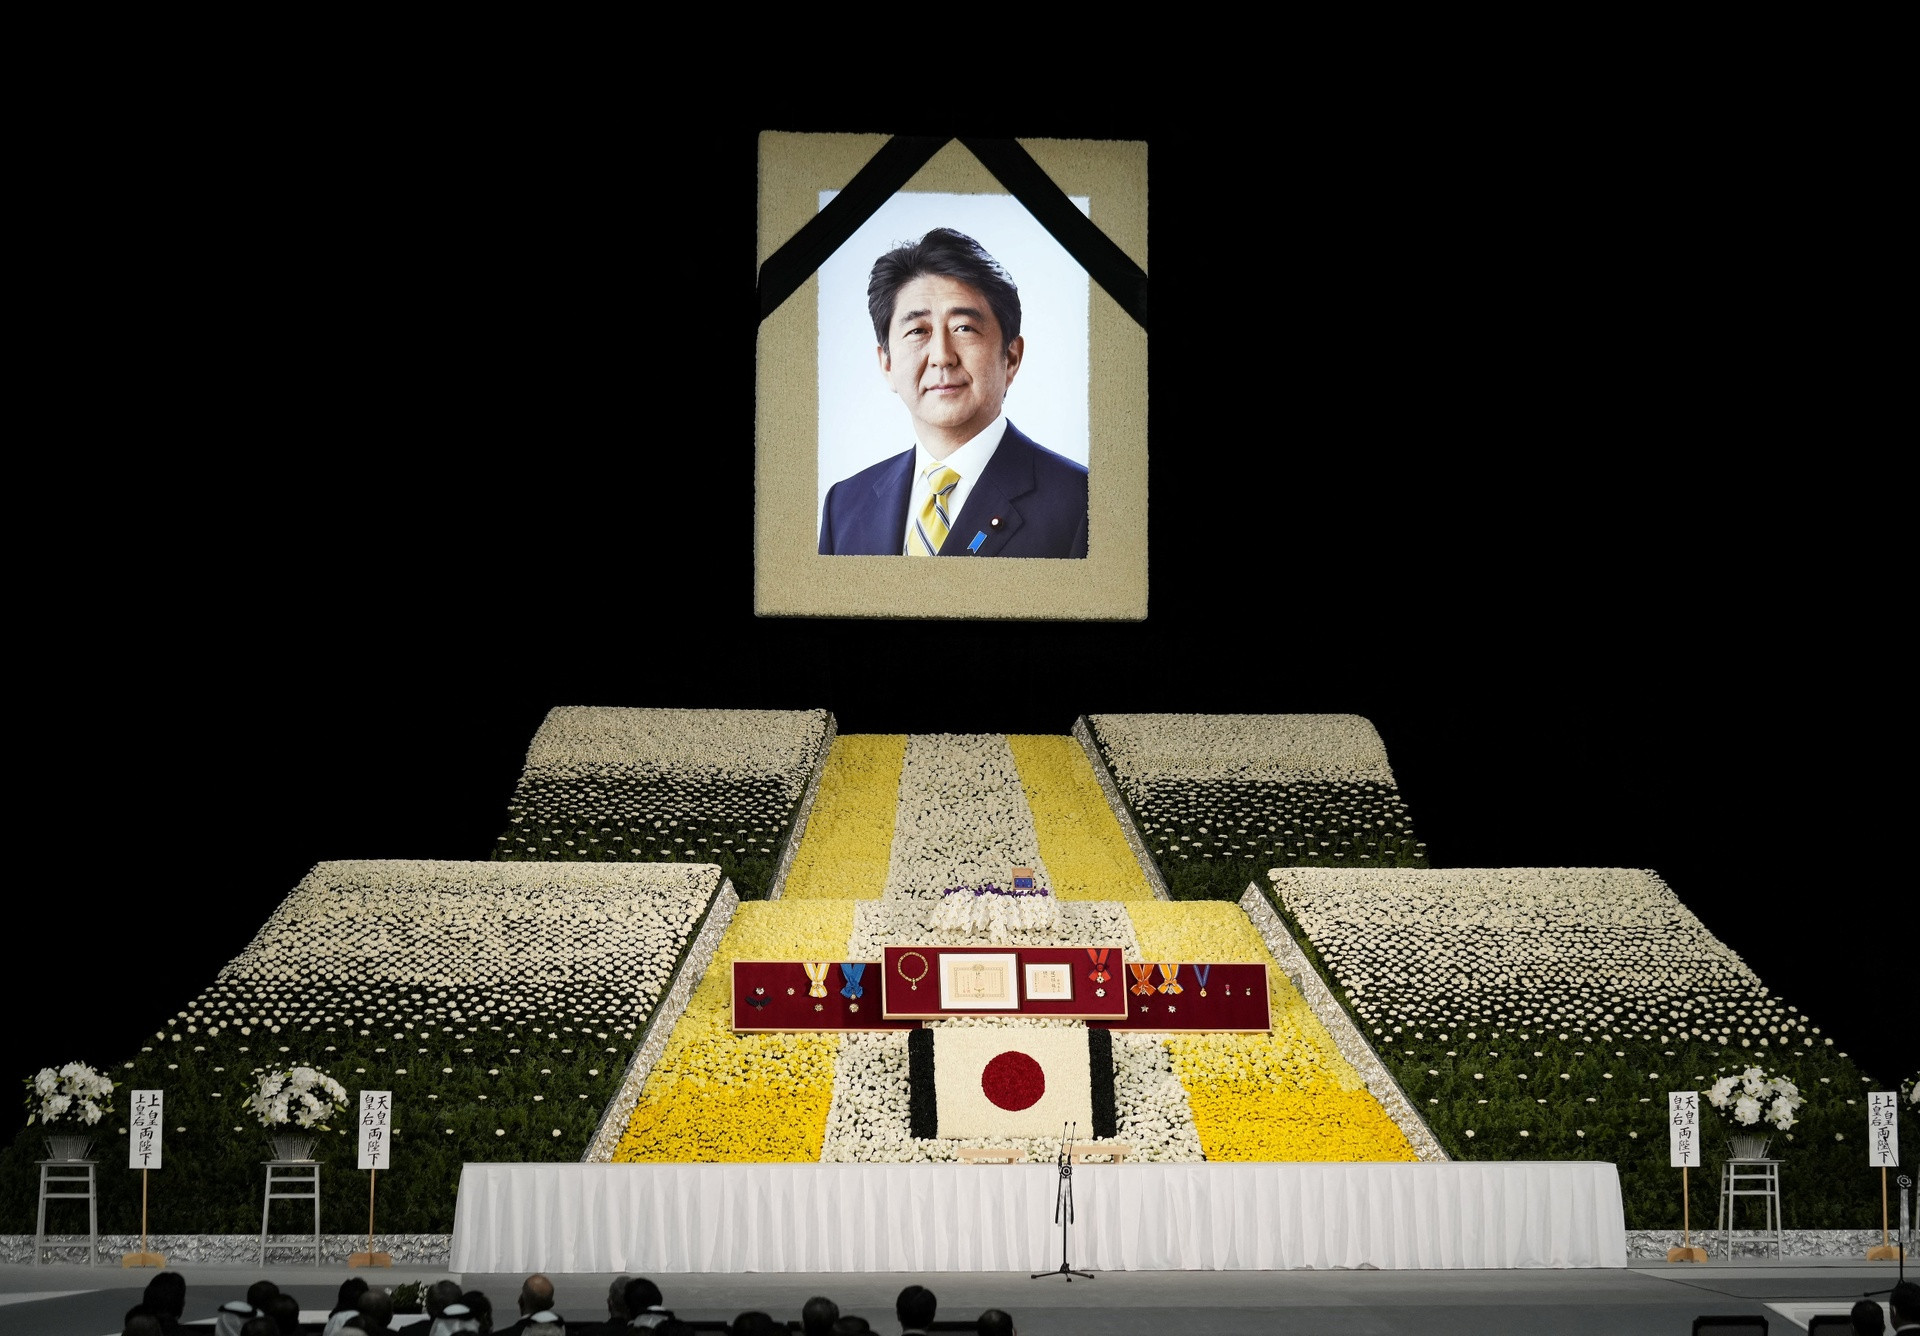 Quốc tang ông Abe chính thức bắt đầu